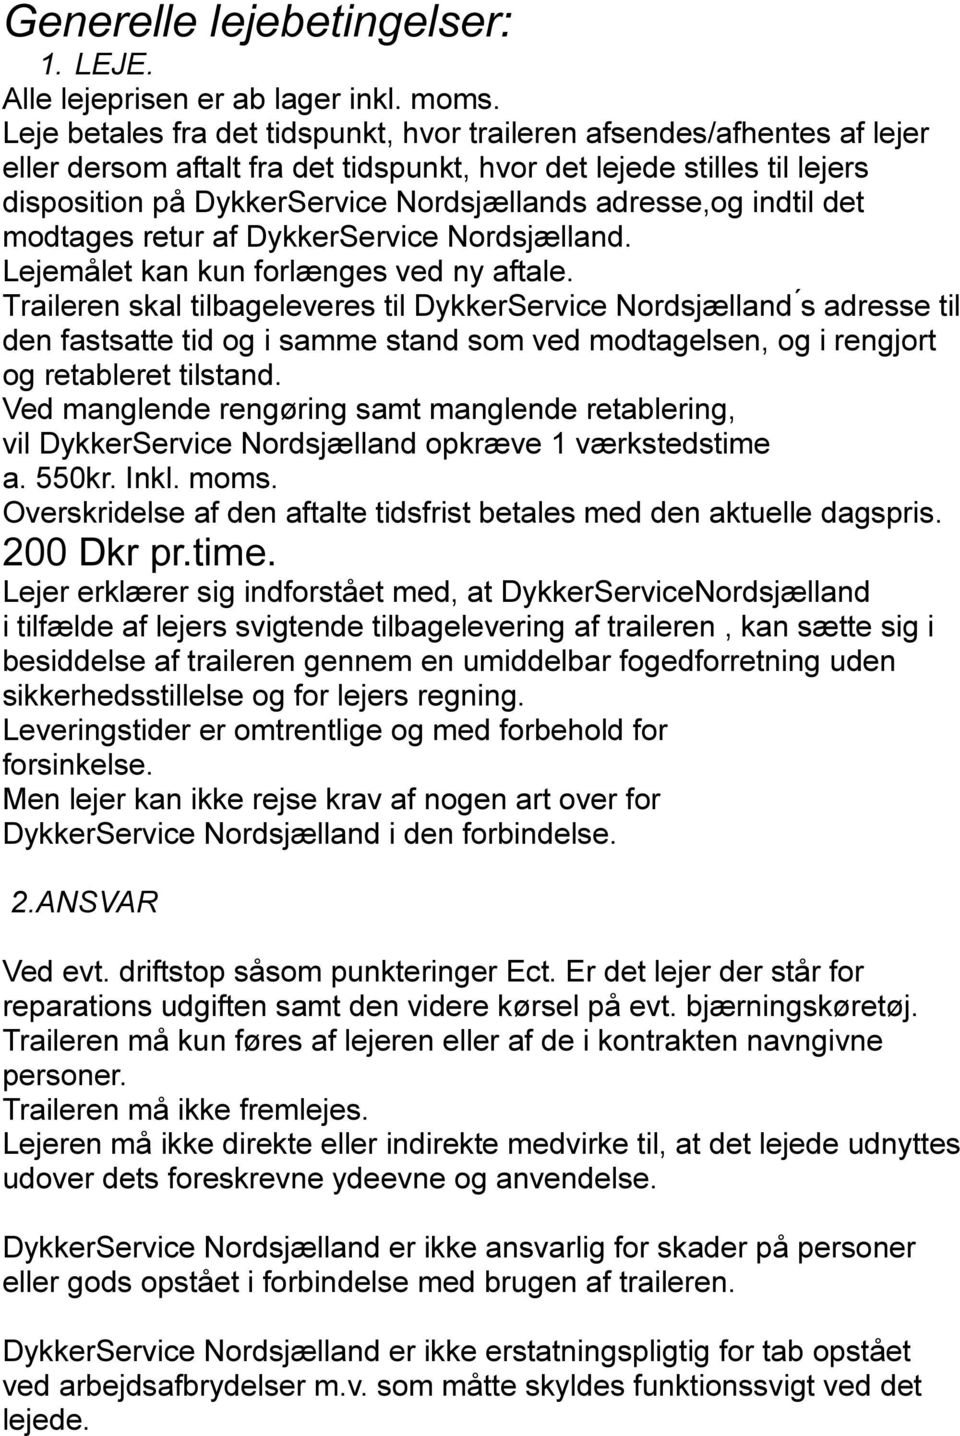 adresse,og indtil det modtages retur af DykkerService Nordsjælland. Lejemålet kan kun forlænges ved ny aftale.